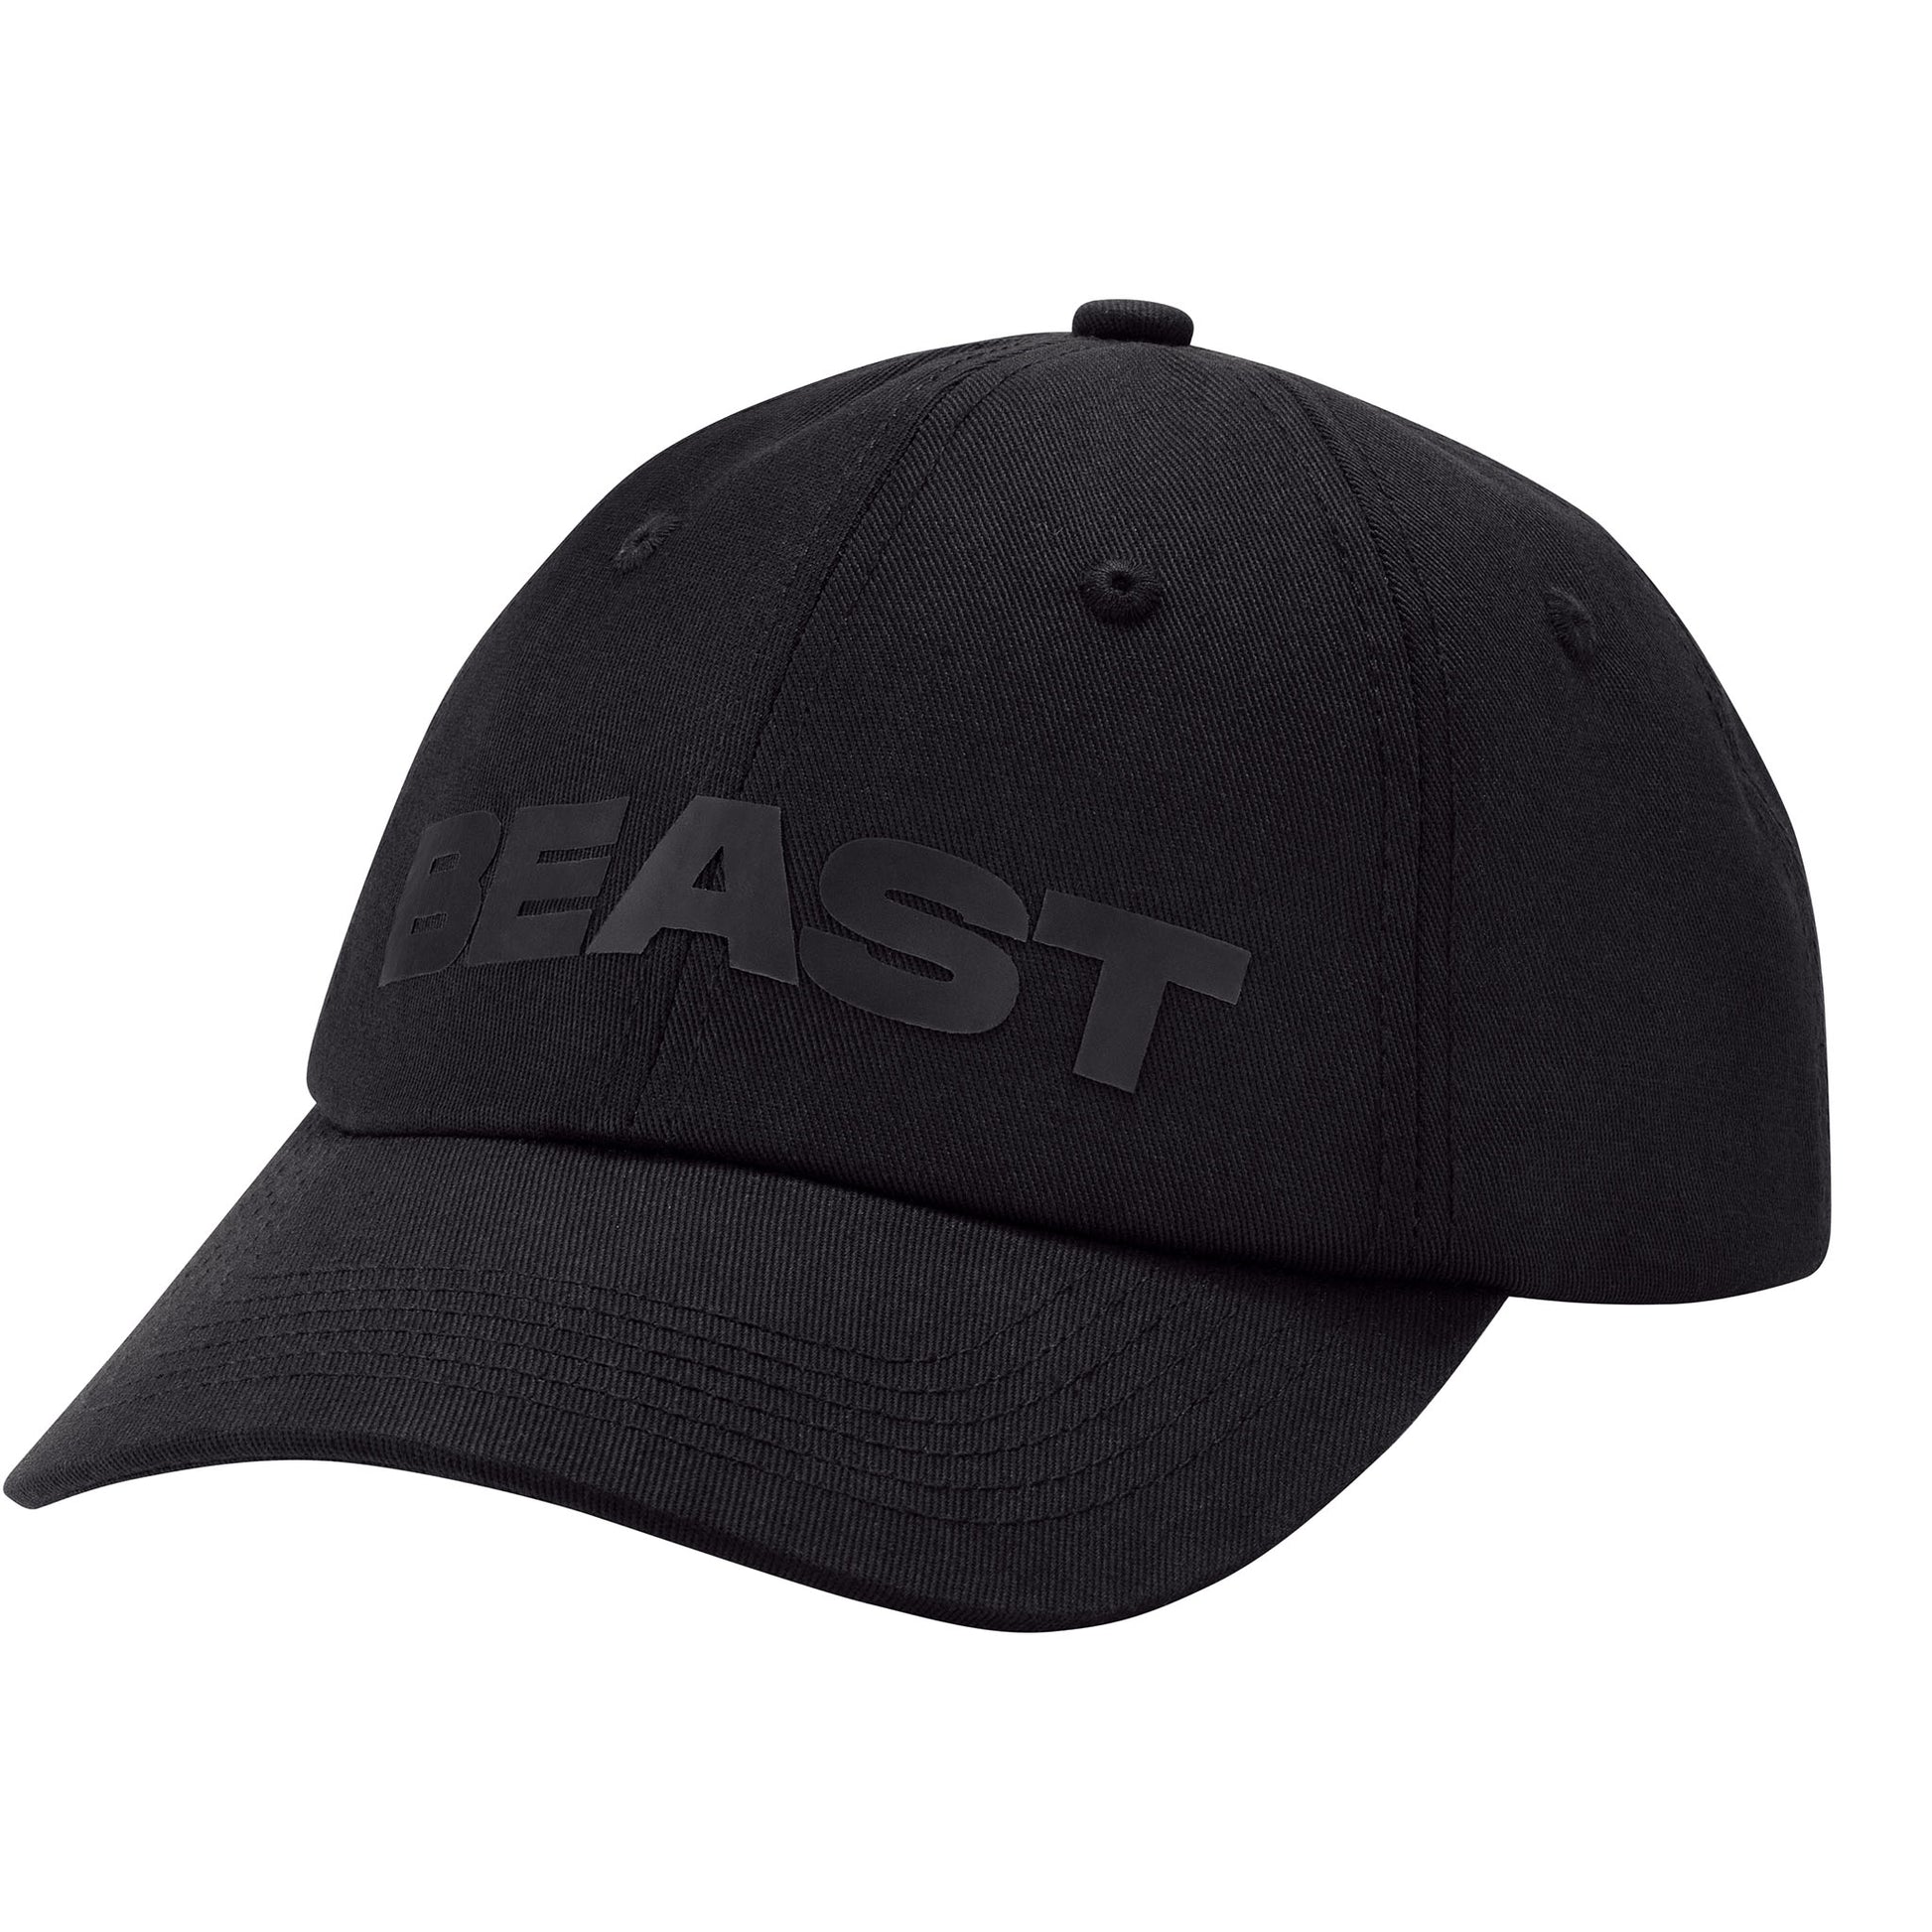 BEAST GEAR BLACK MESH CAP